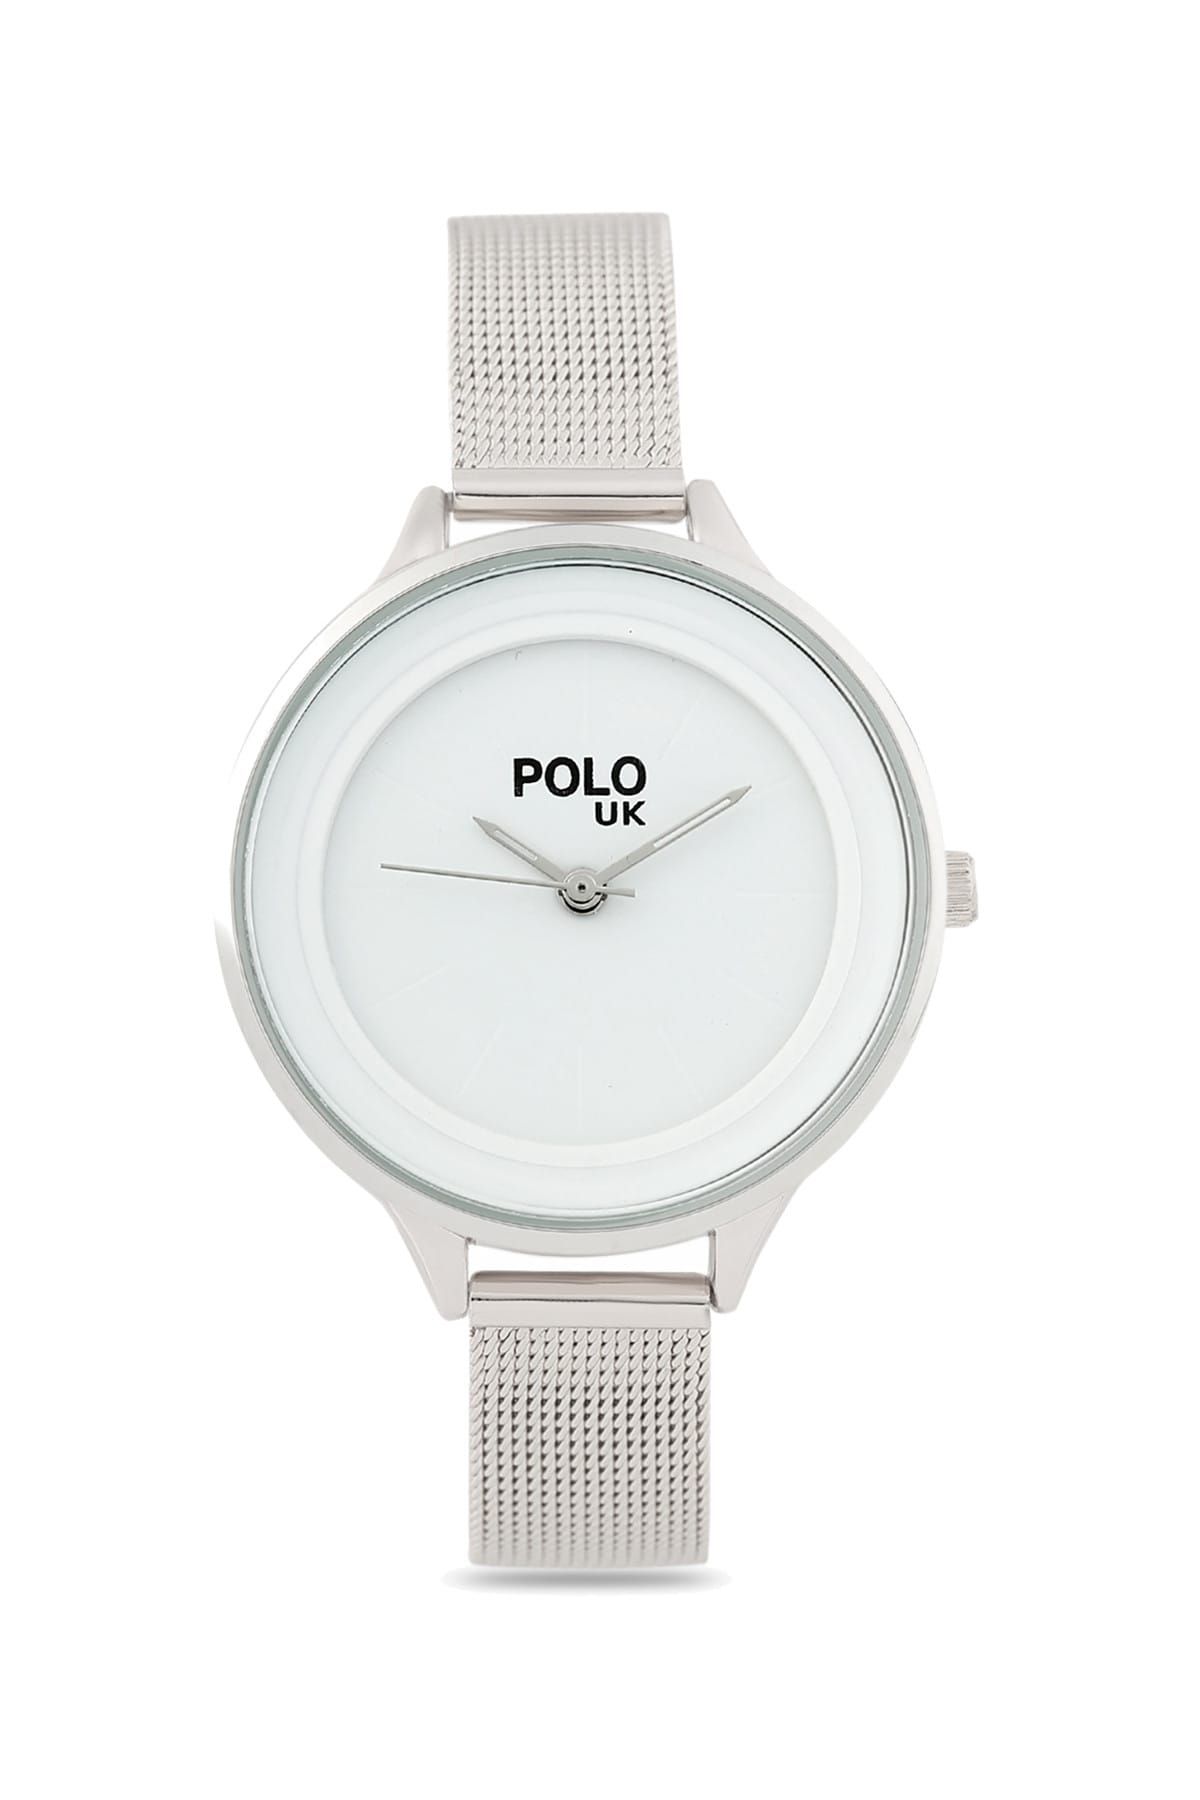 Polo U.K. Kadın Kol Saati POLOUK 5504